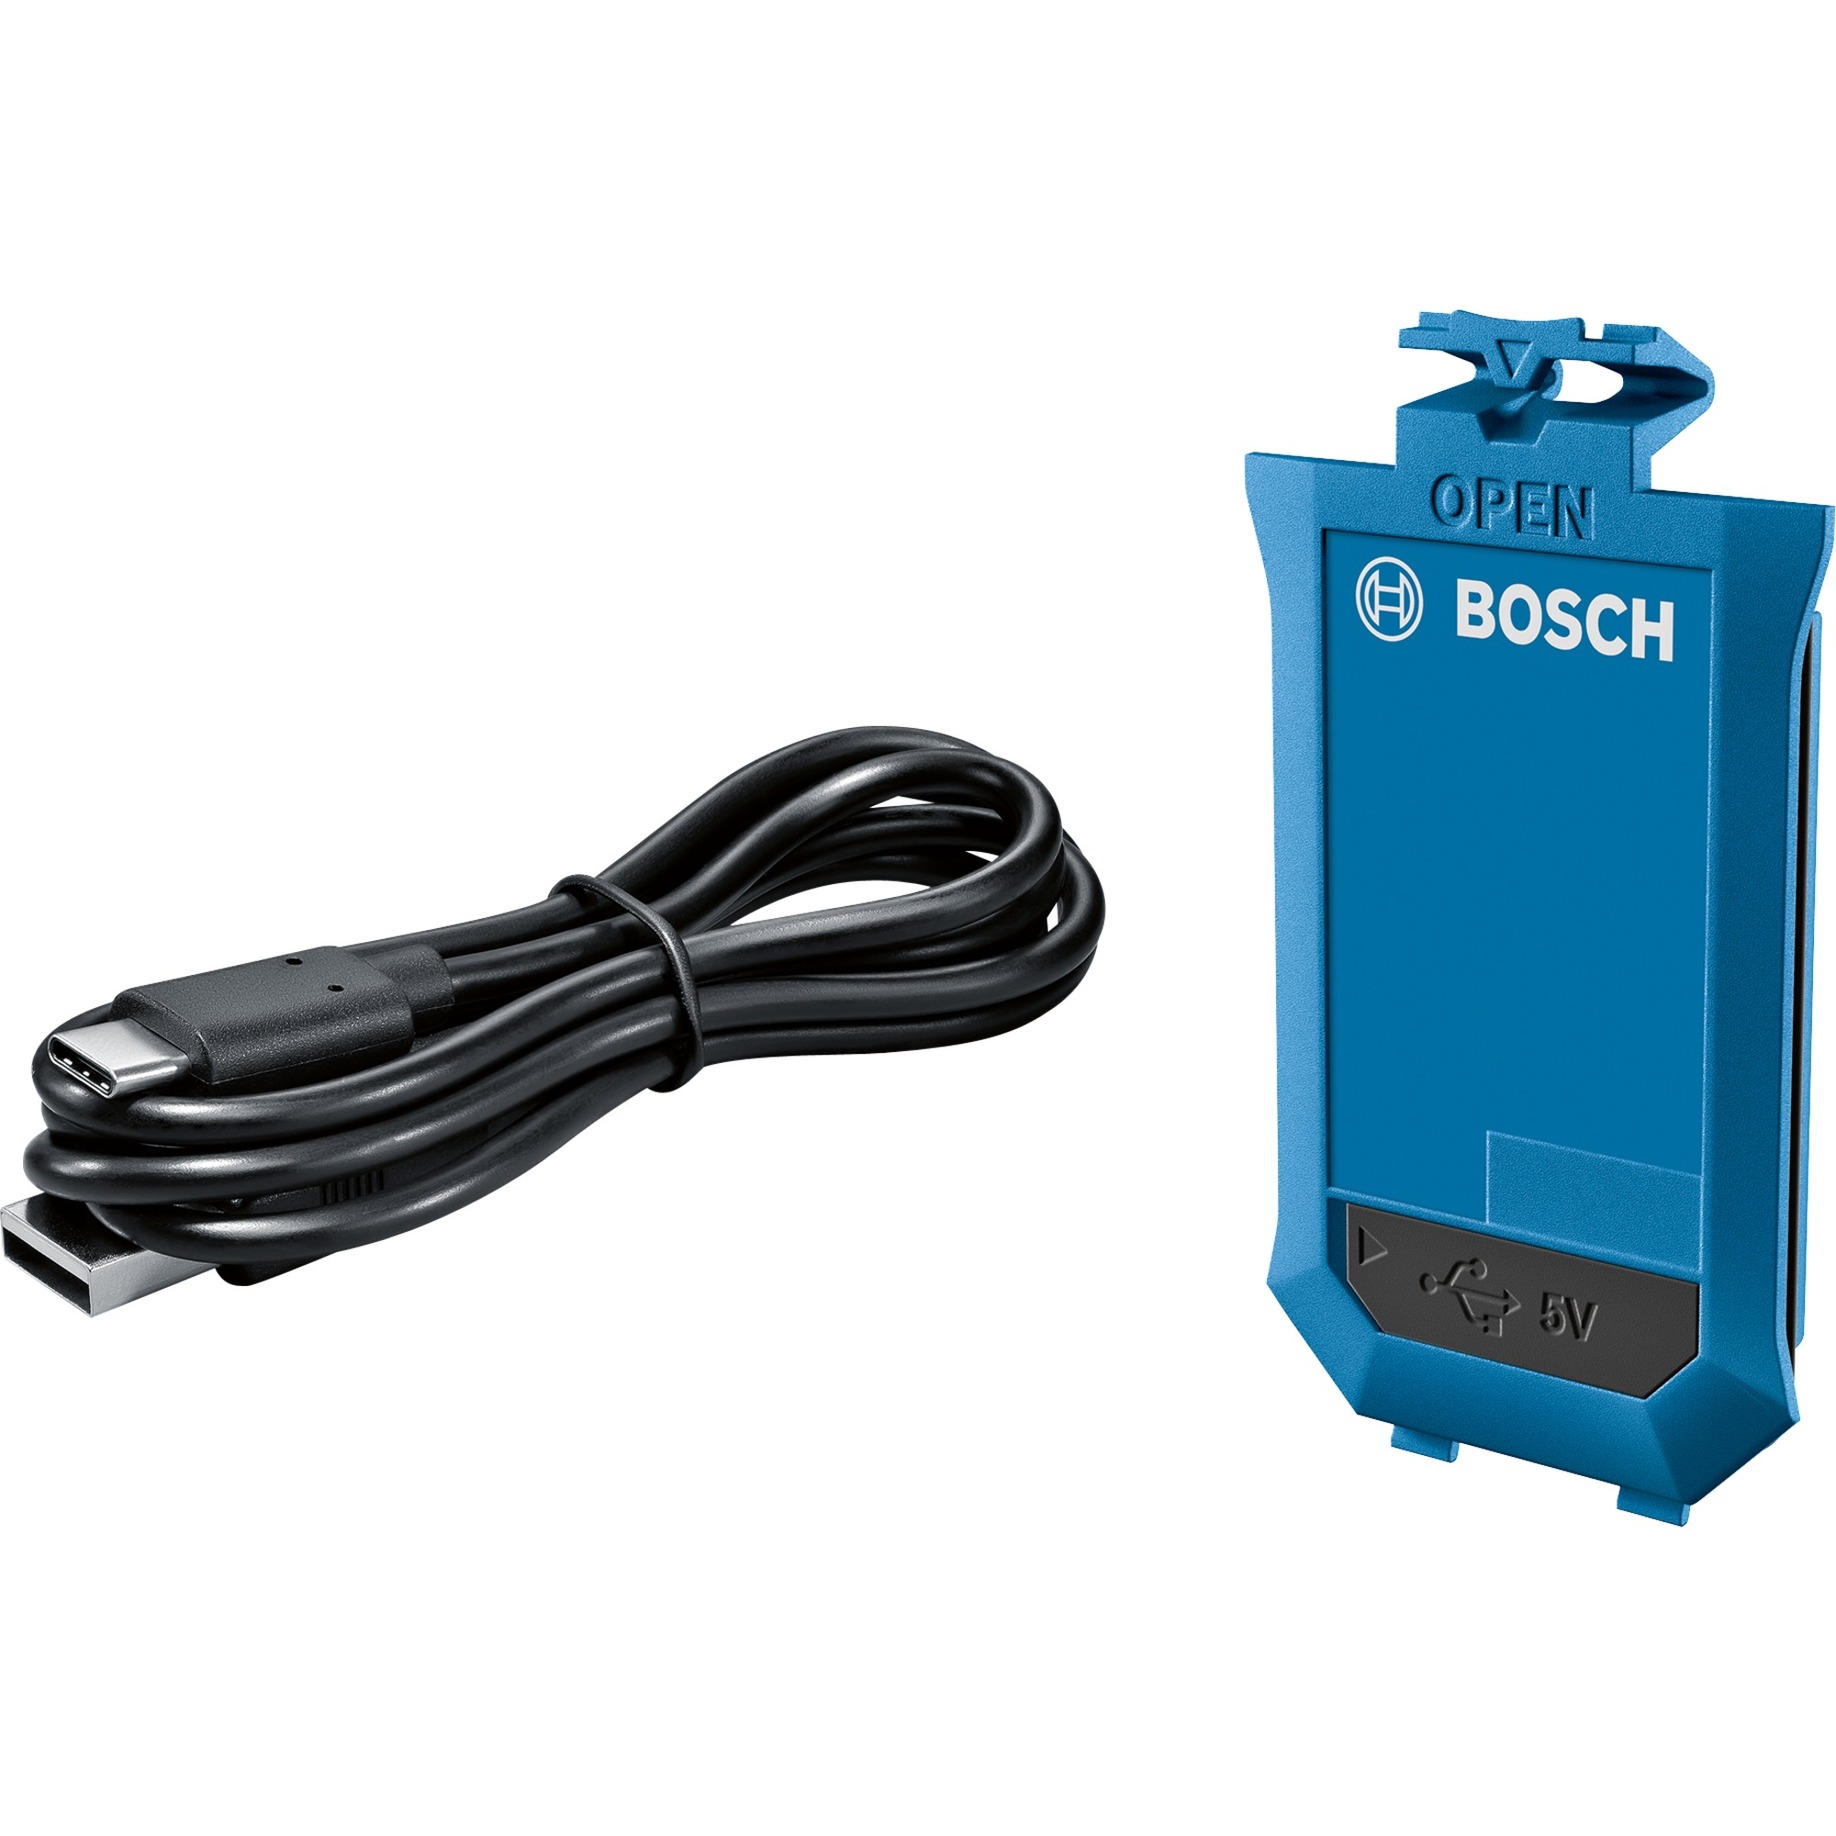 BA 3.7V 1.0Ah A Professional, Akku von Bosch